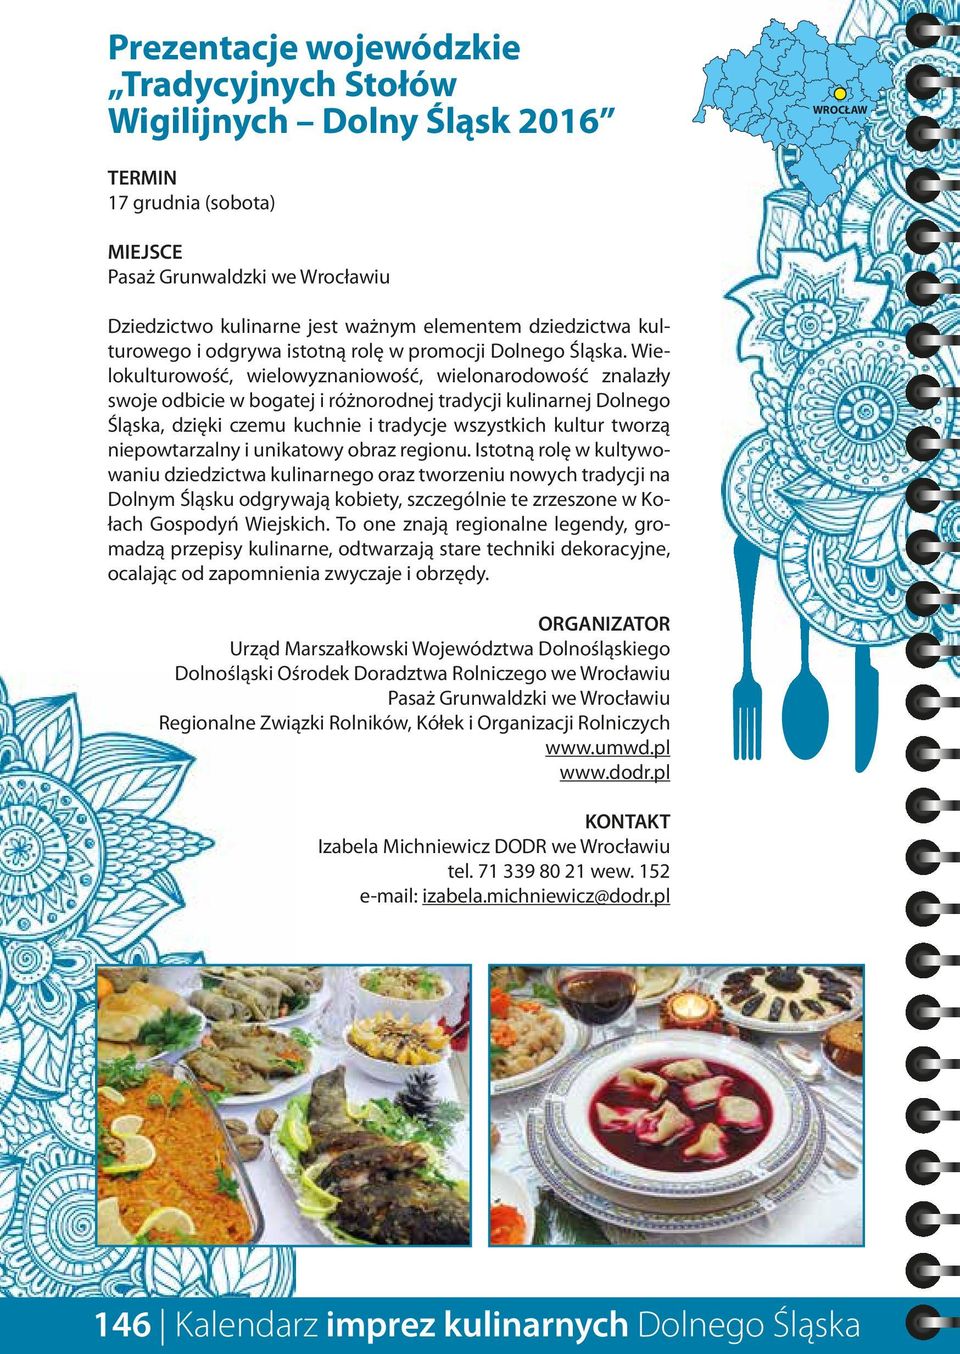 Wielokulturowość, wielowyznaniowość, wielonarodowość znalazły swoje odbicie w bogatej i różnorodnej tradycji kulinarnej Dolnego Śląska, dzięki czemu kuchnie i tradycje wszystkich kultur tworzą